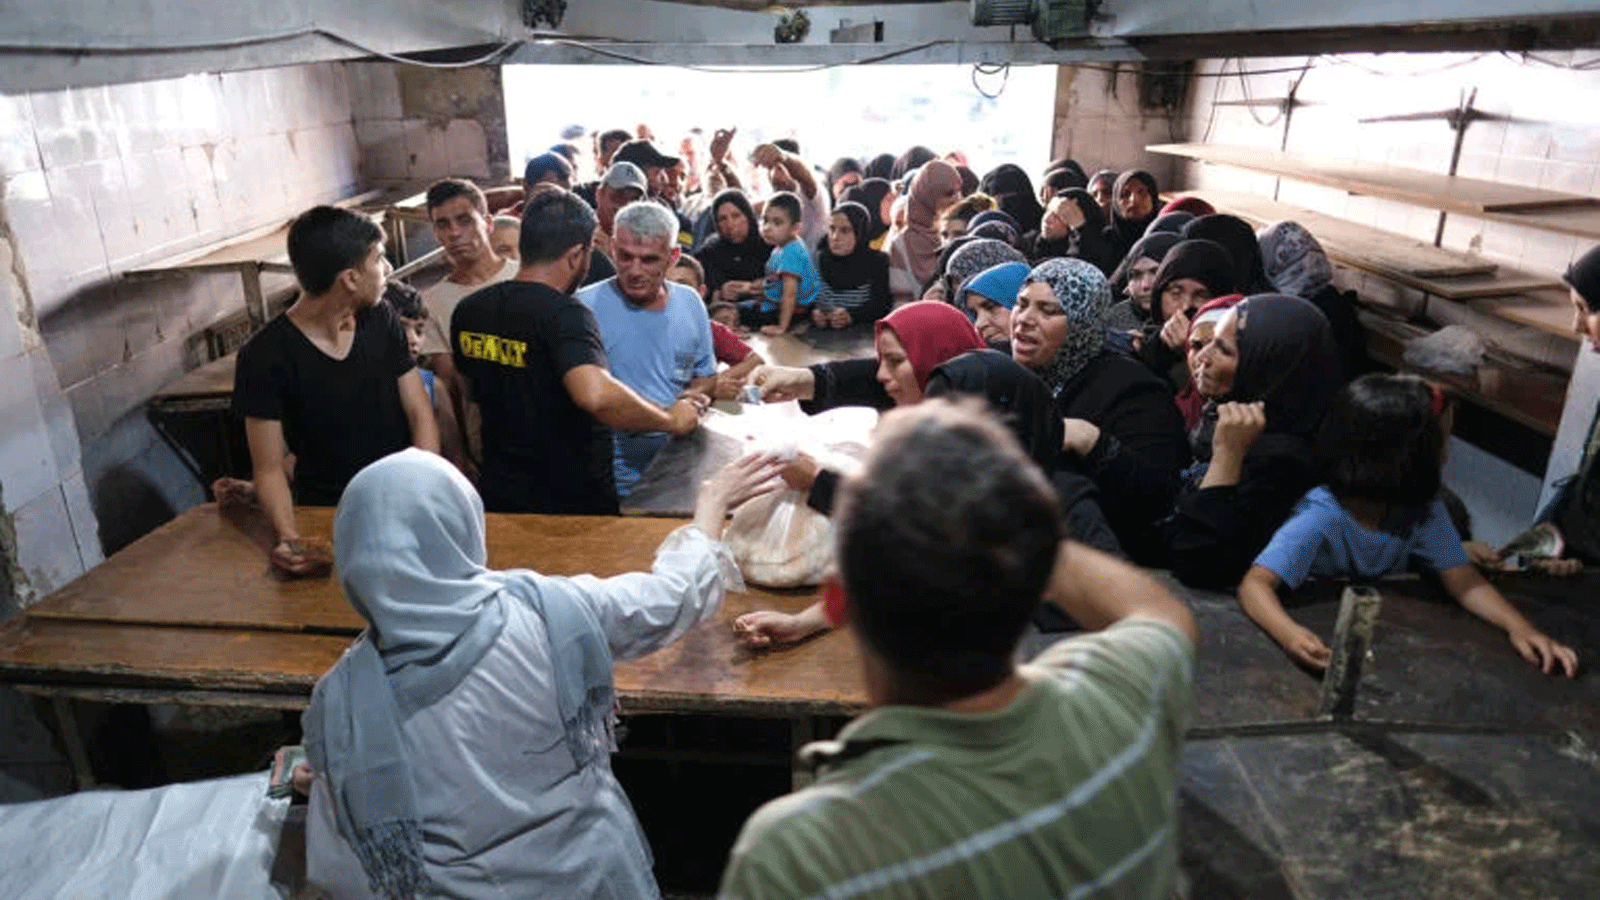 تتشكل طوابير طويلة خارج مخبز في مدينة طرابلس الساحلية بشمال لبنان حيث يضطر الناس أحيانًا إلى الانتظار لساعات للحصول على كيس من خبز البيتا العربي المدعوم